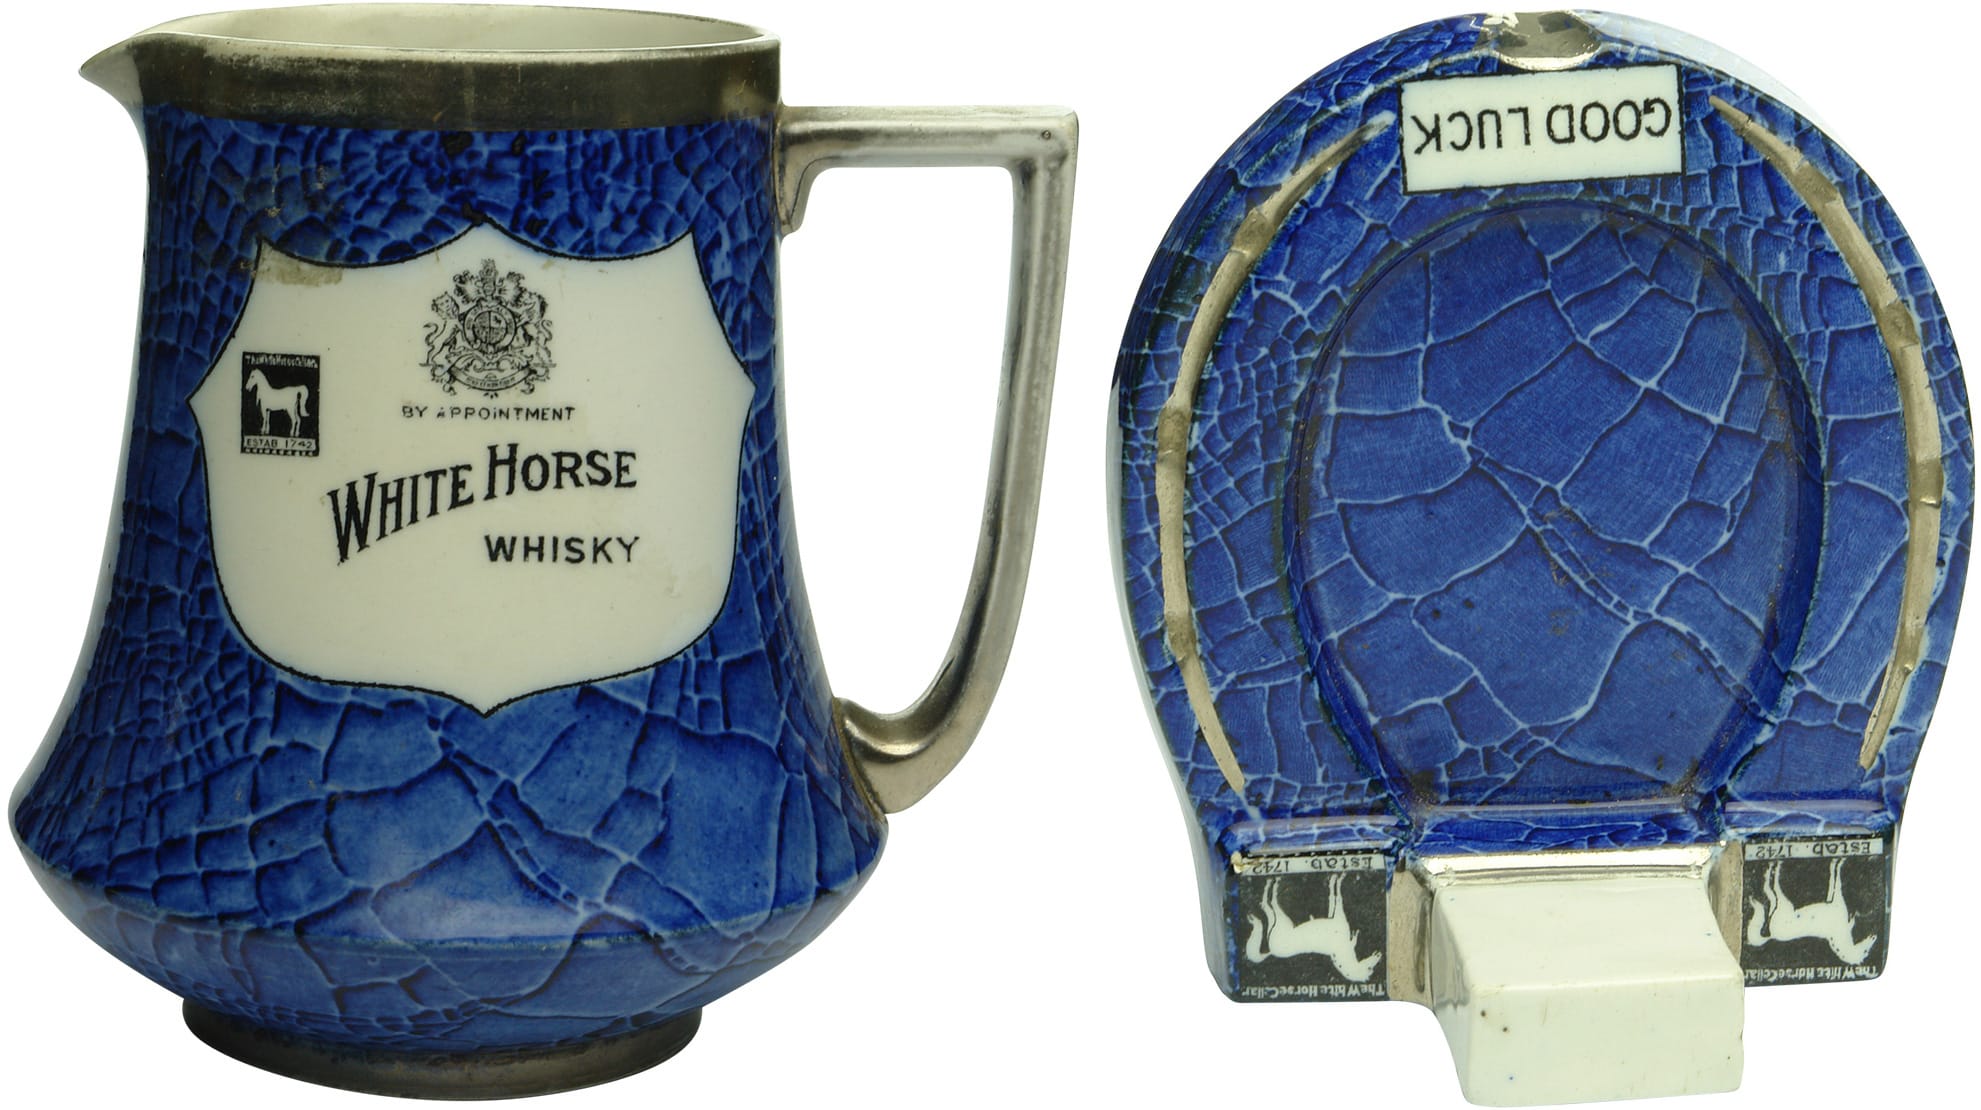 Shelley White Horse Whisky Advertising Jug Ashtray